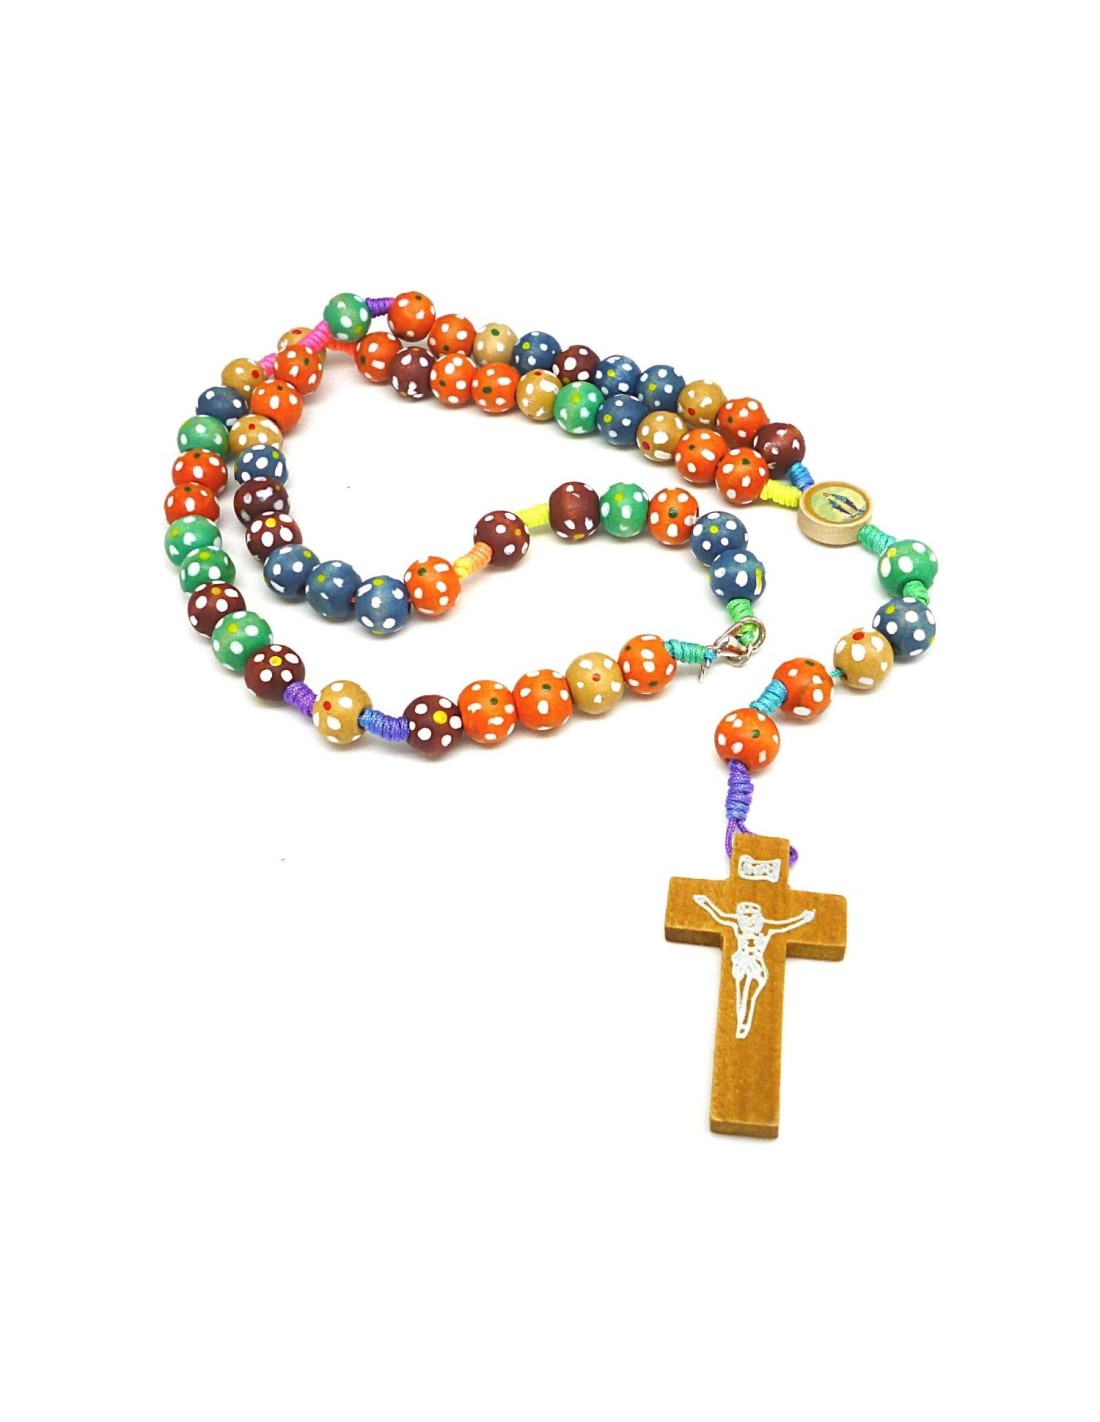 https://dellarteroma.com/572-thickbox_default/rosario-legno-multicolor.jpg